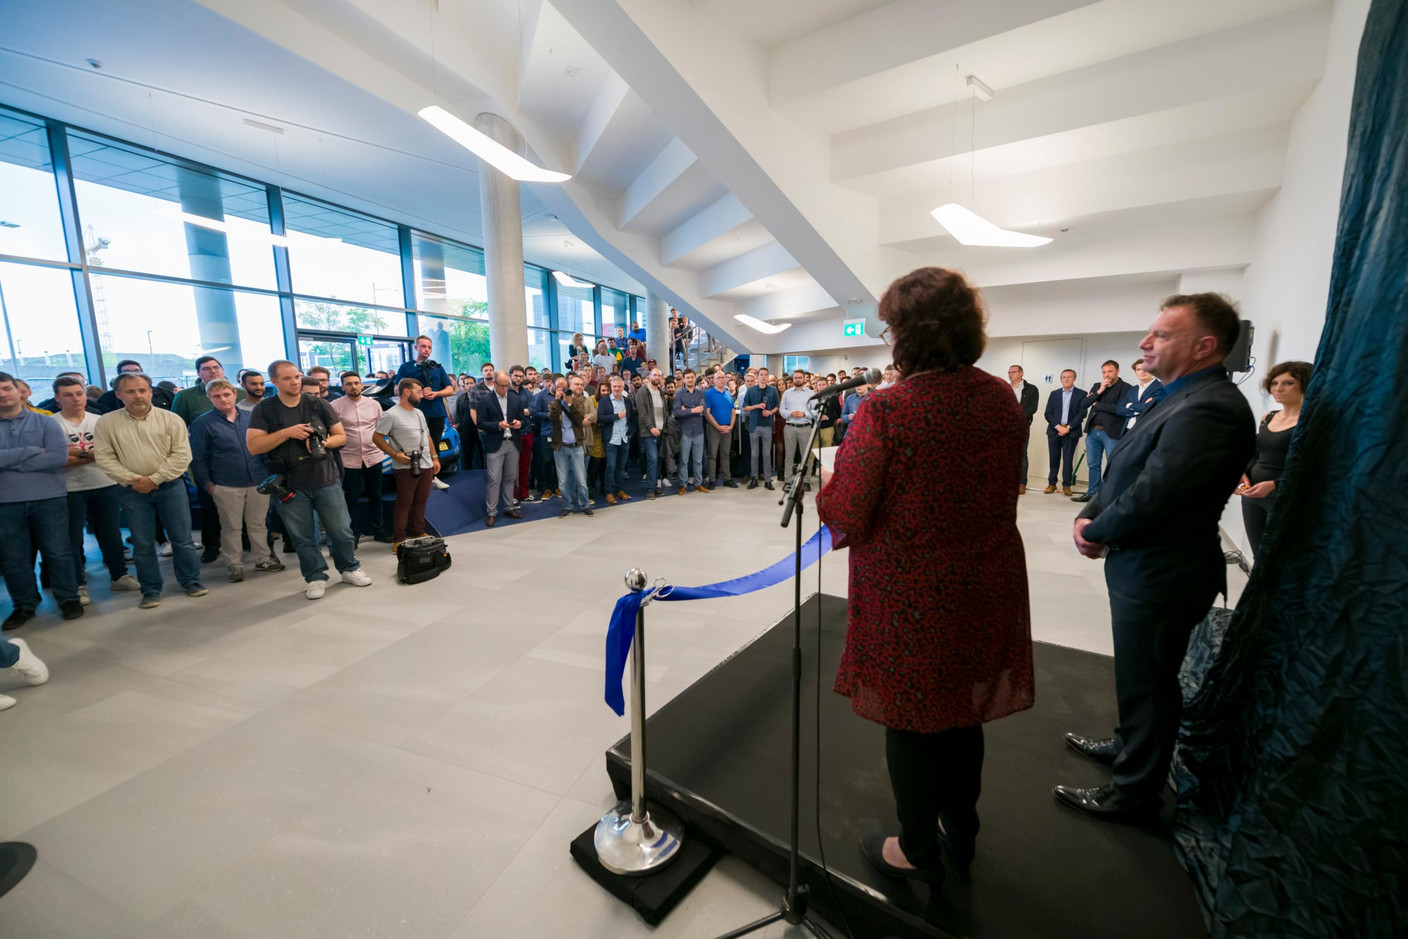 Inauguration du nouveau bâtiment Naos d’ARHS Group à Belval - 27.09.2019 (Photo: ARHS Group)